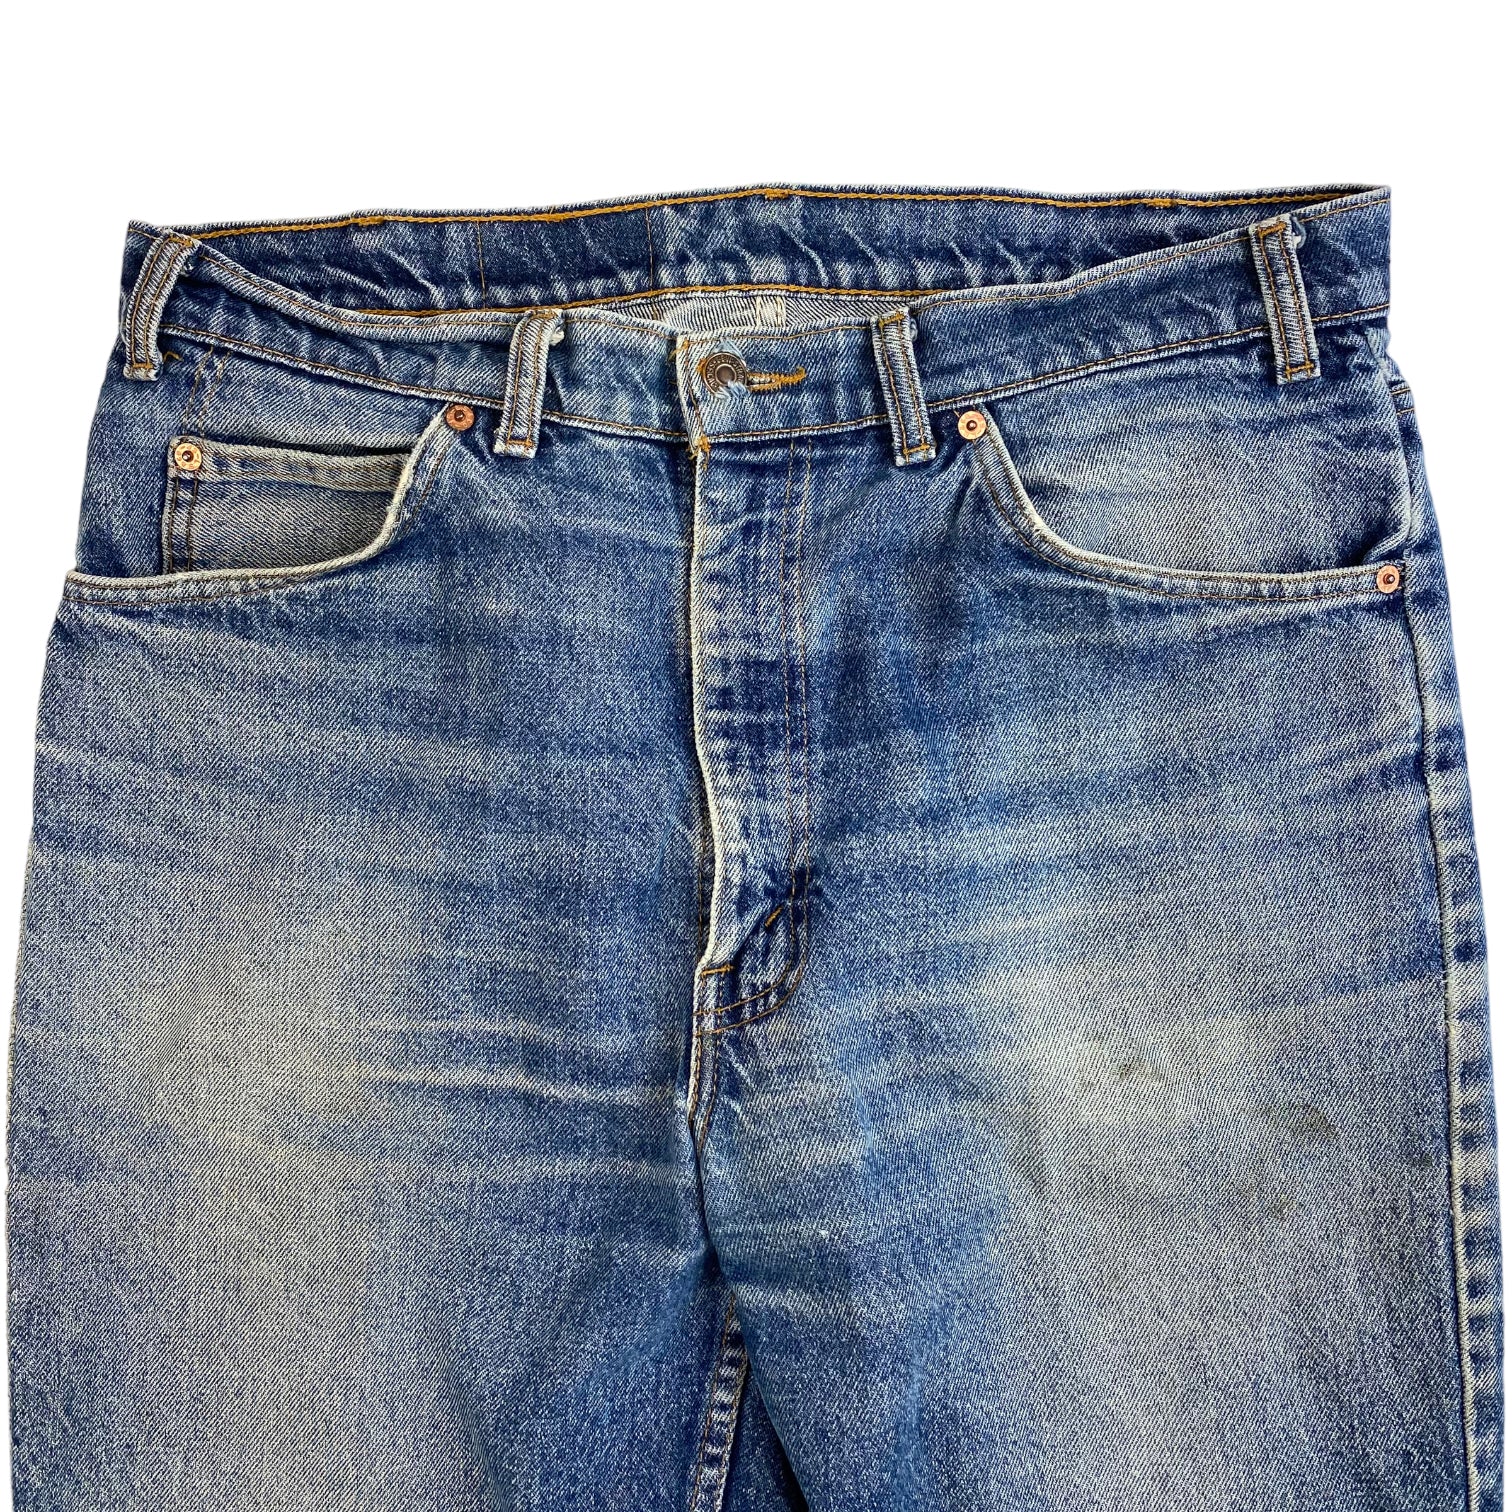 Vintage Levi’s 506 Jeans